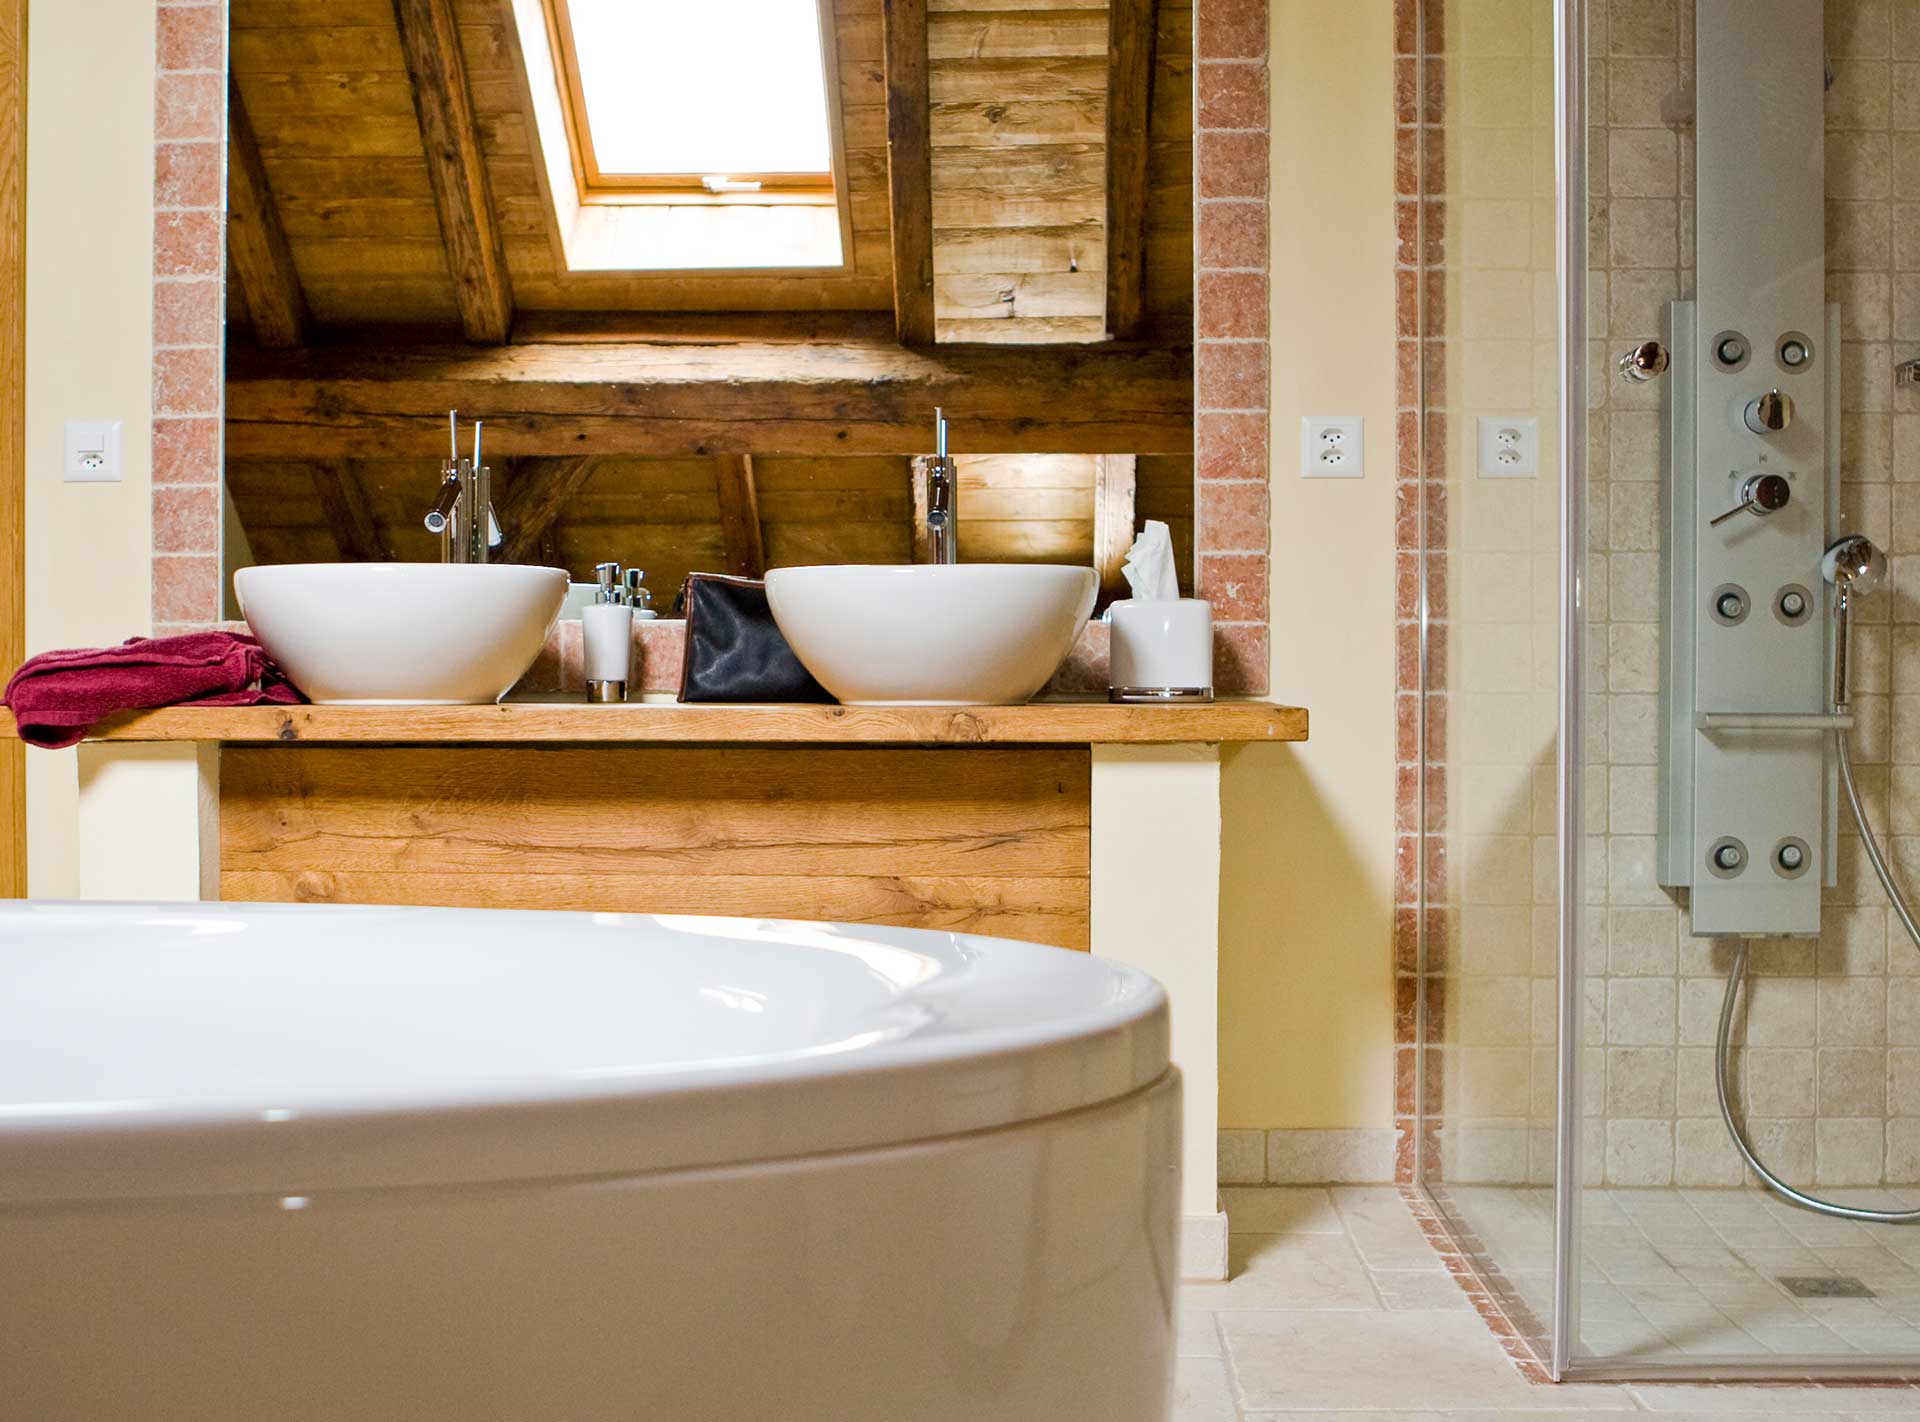 Salle de bains avec vasques, douche et baignoire de la ferme de Founex rénovée en appartement par Anne-Laure Ferry-Adam, architecte d'intérieur à Genève